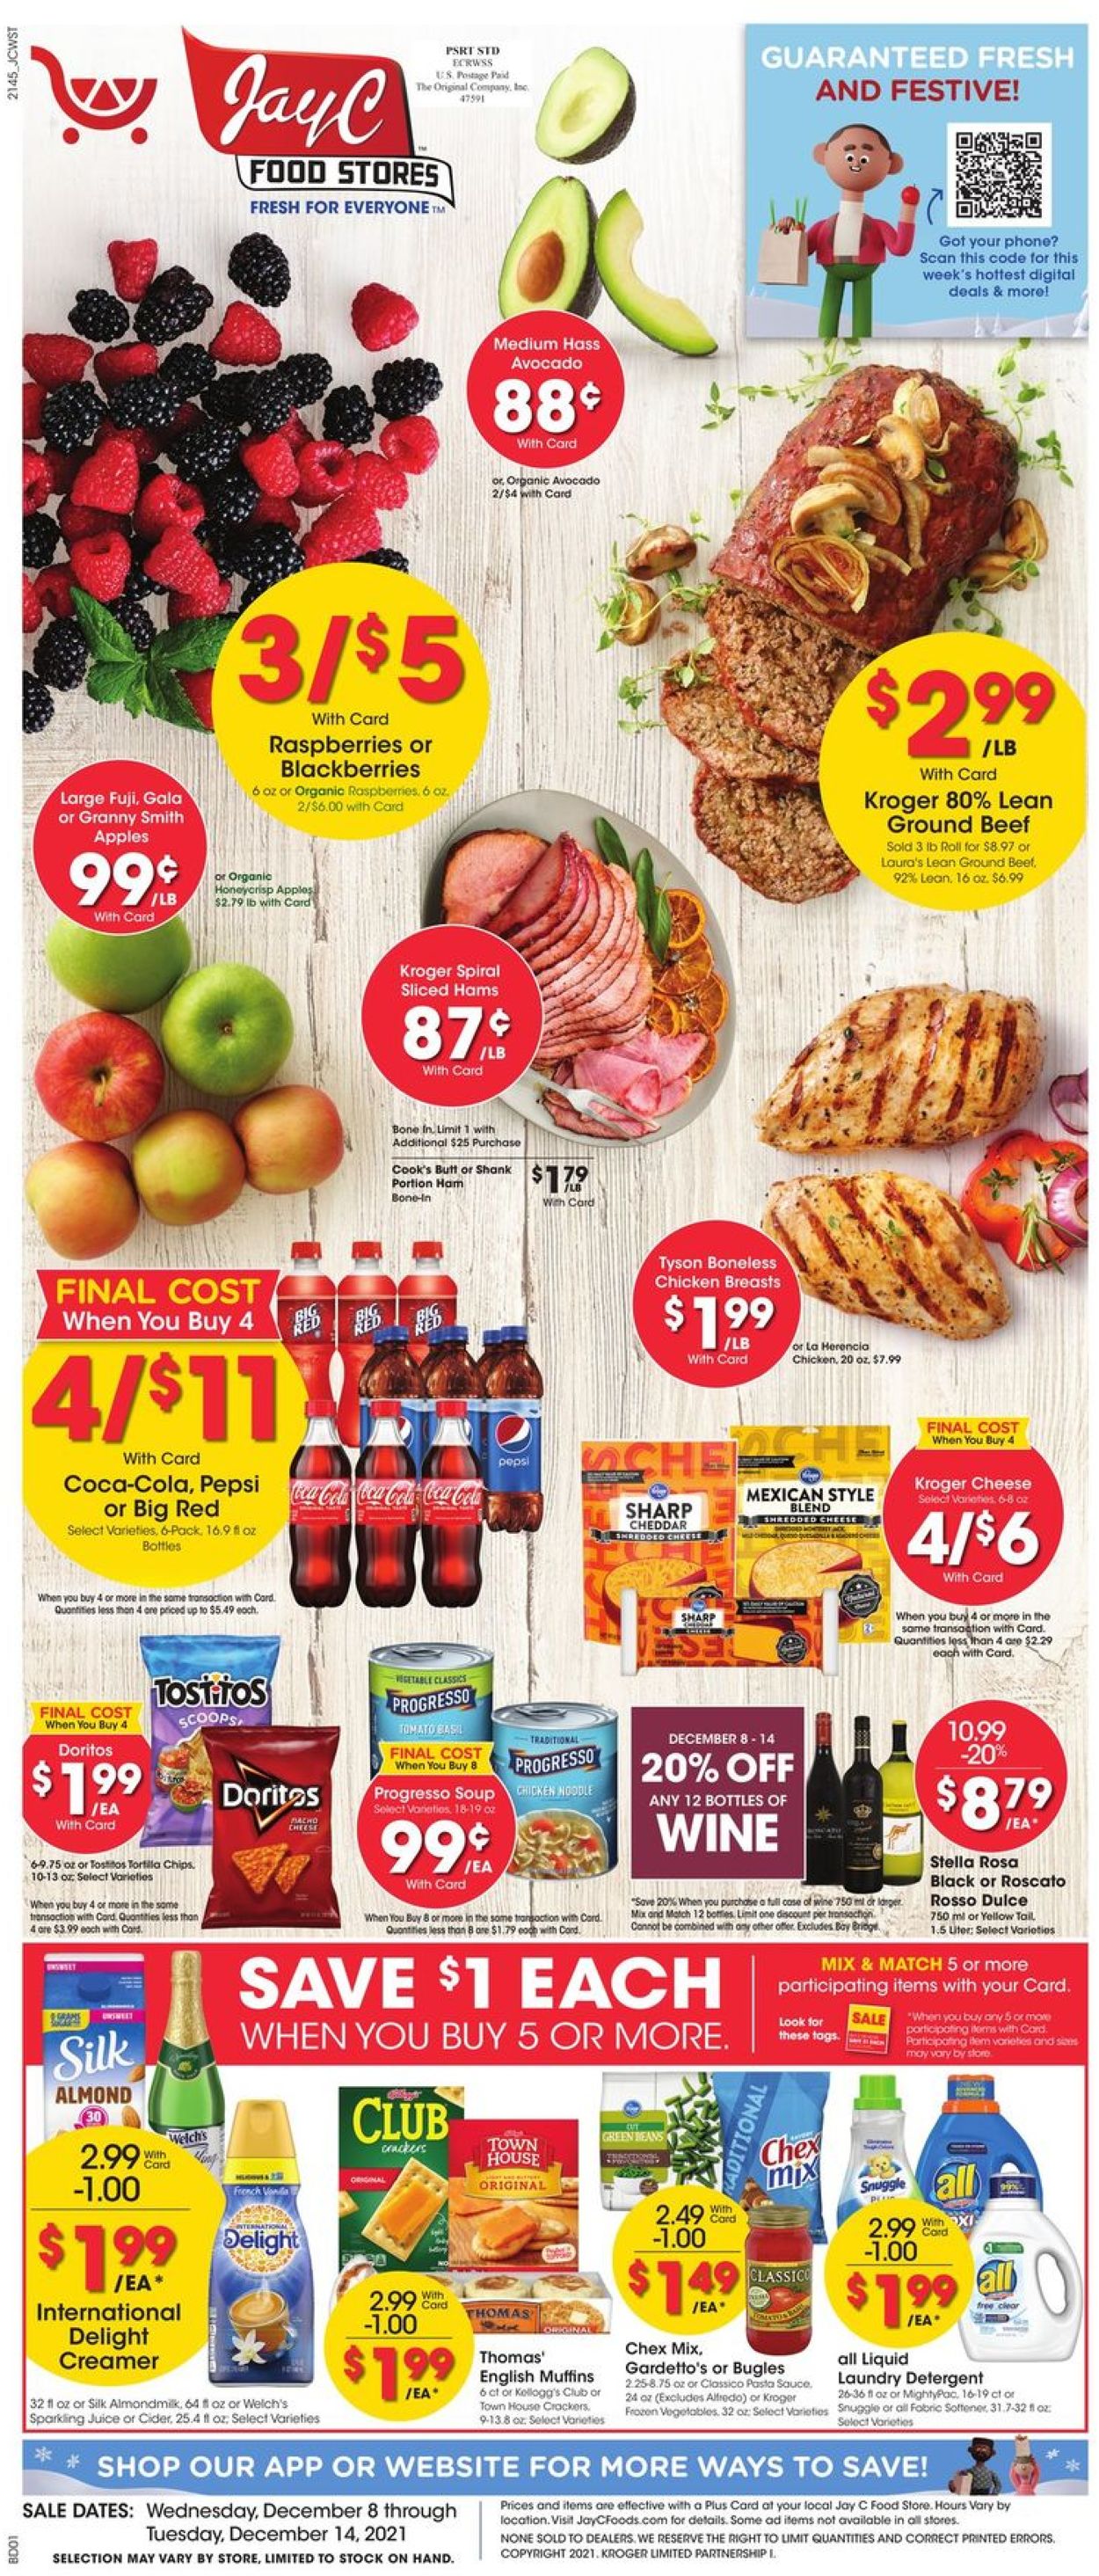 Jay C Food Stores HOLIDAY 2021 Weekly Ad Circular - valid 12/08-12/14/2021